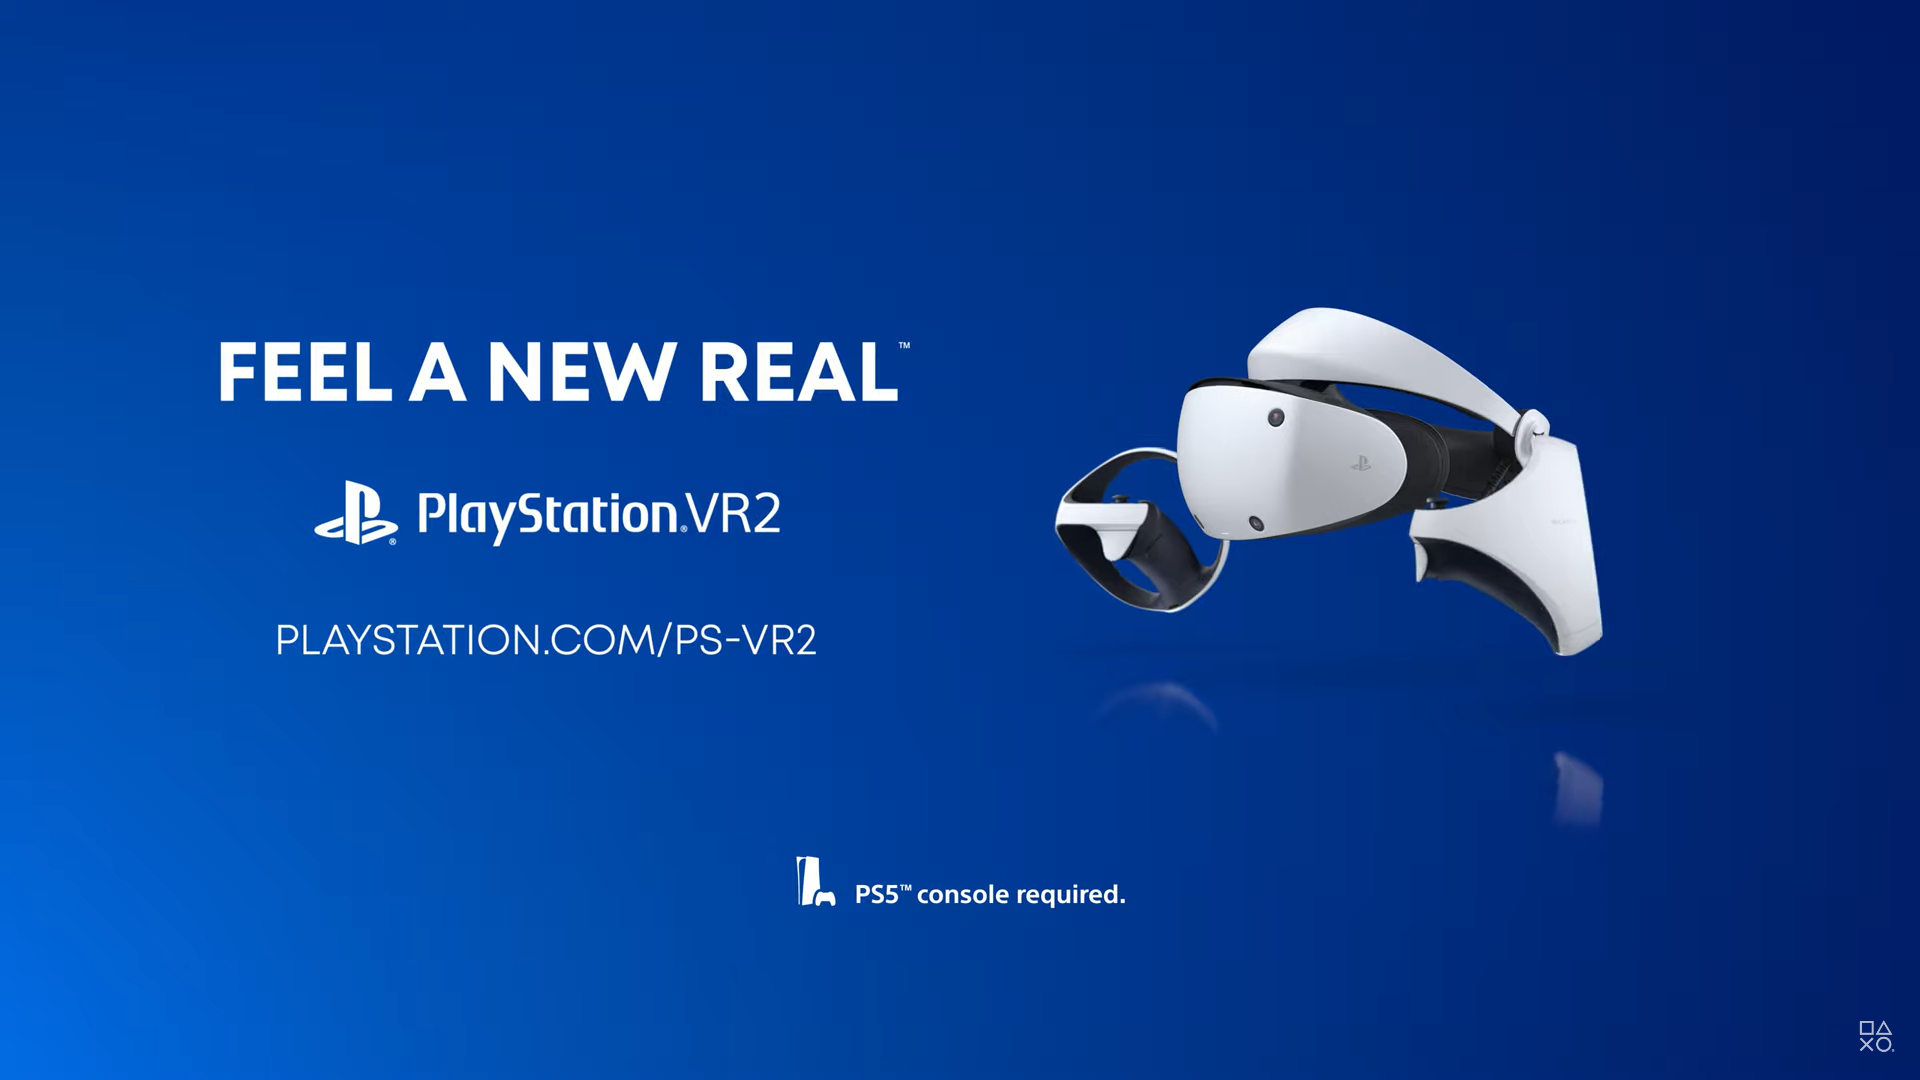 PS VR2特性介紹宣傳片公佈：感受新的真實